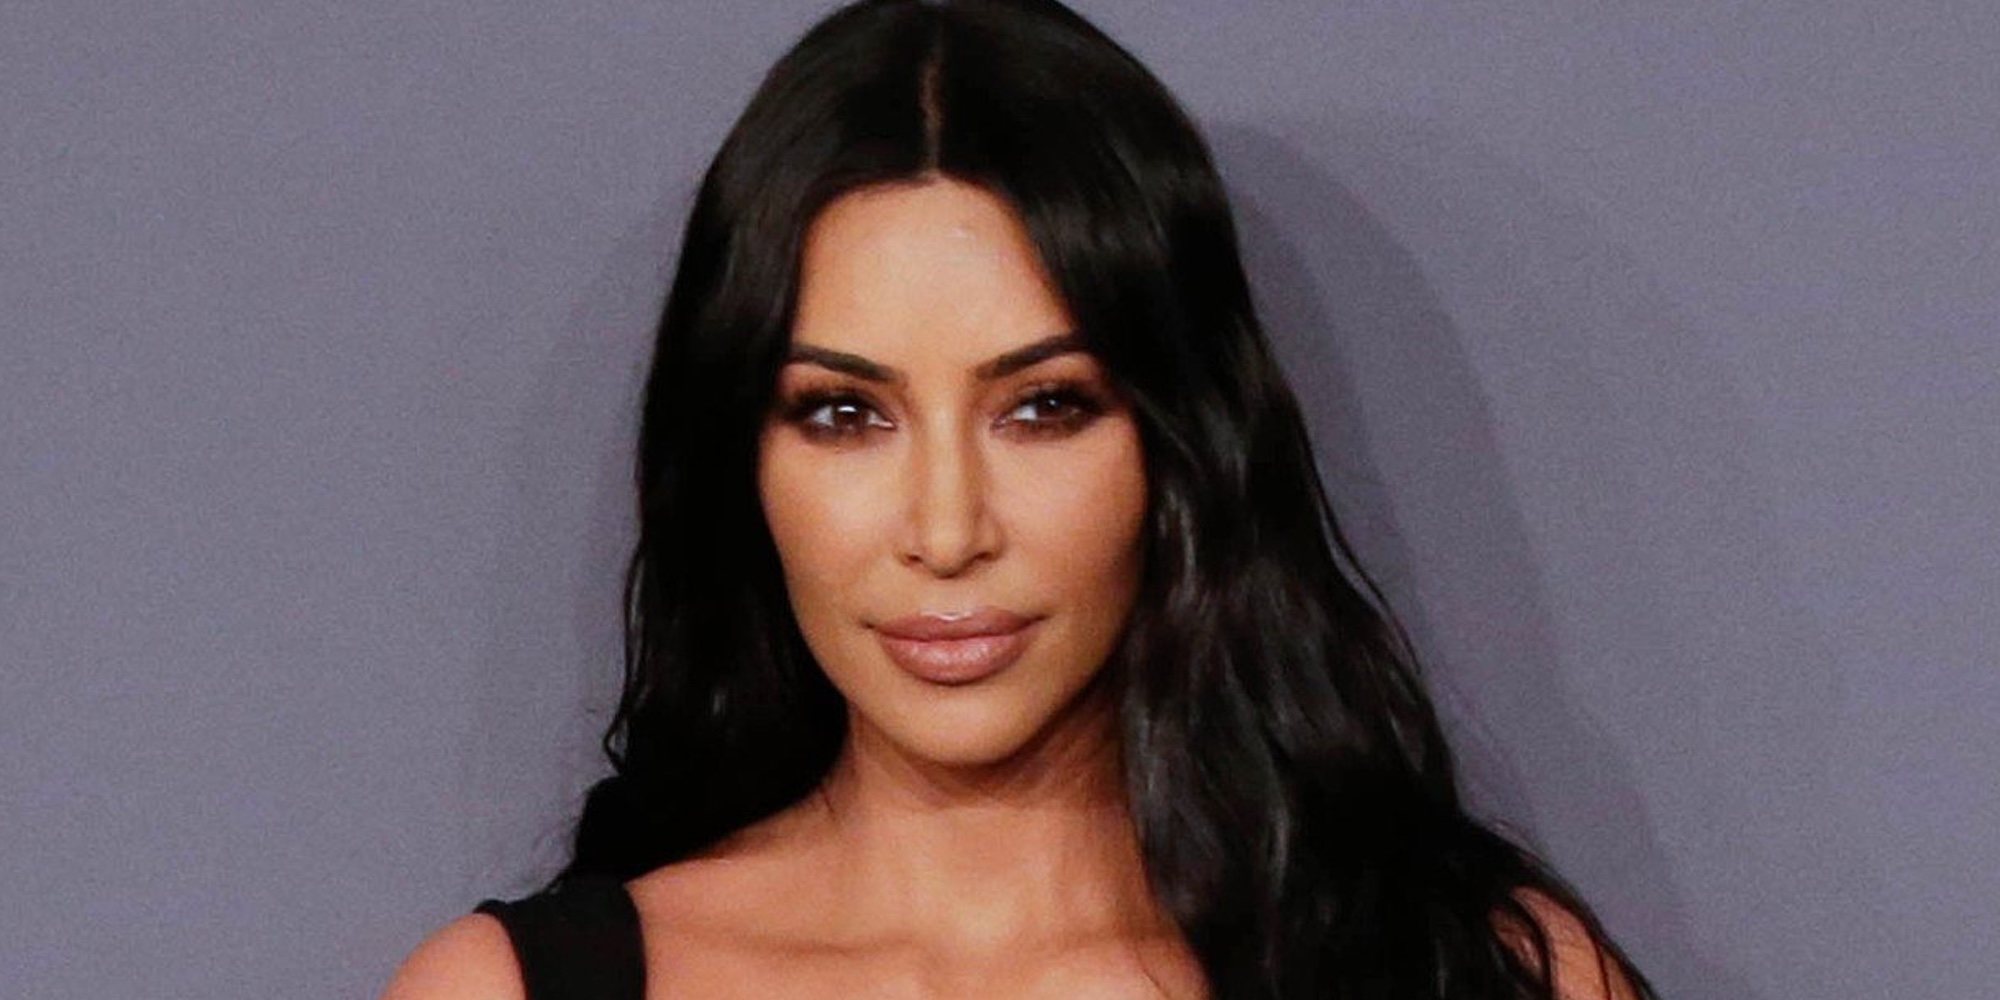 Kim Kardashian crea su propio 'Parque Jurásico' en su casa por el 4 cumpleaños de su hijo Saint West